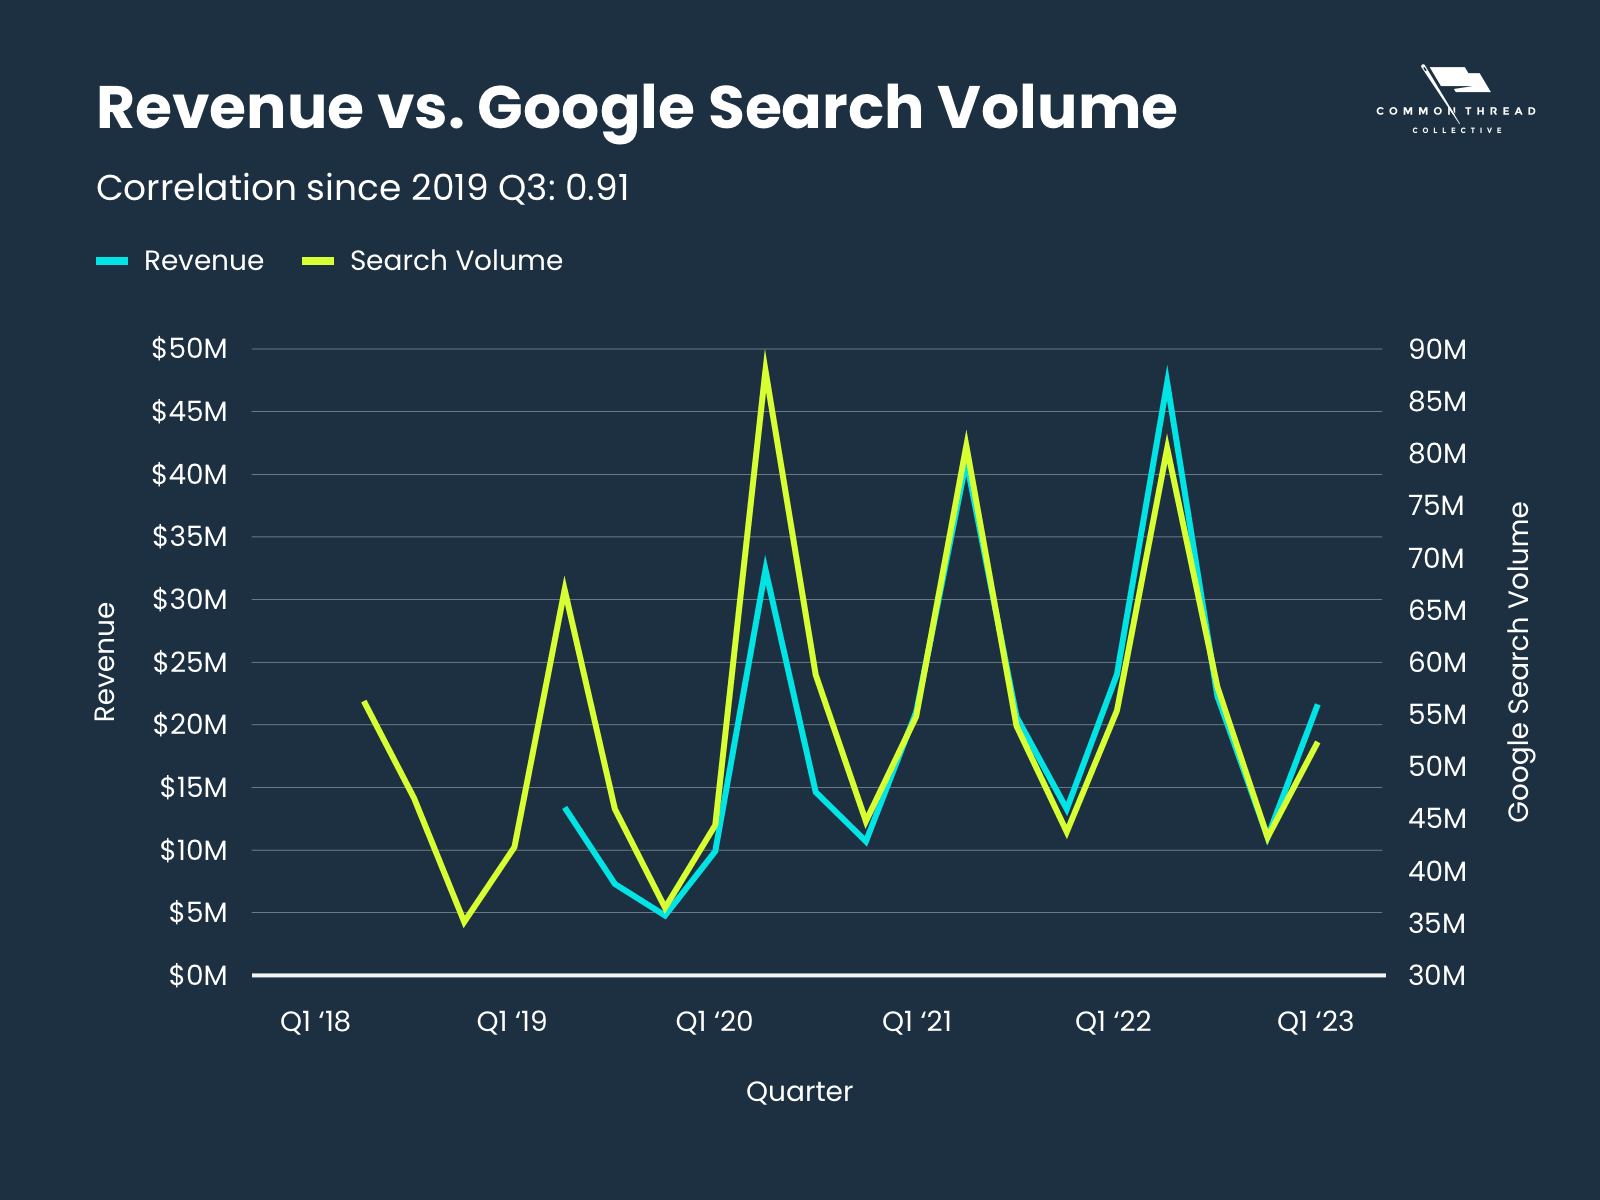 Revenue vs. Google Search Volume (Correlation since 2019 Q3: 0.91)